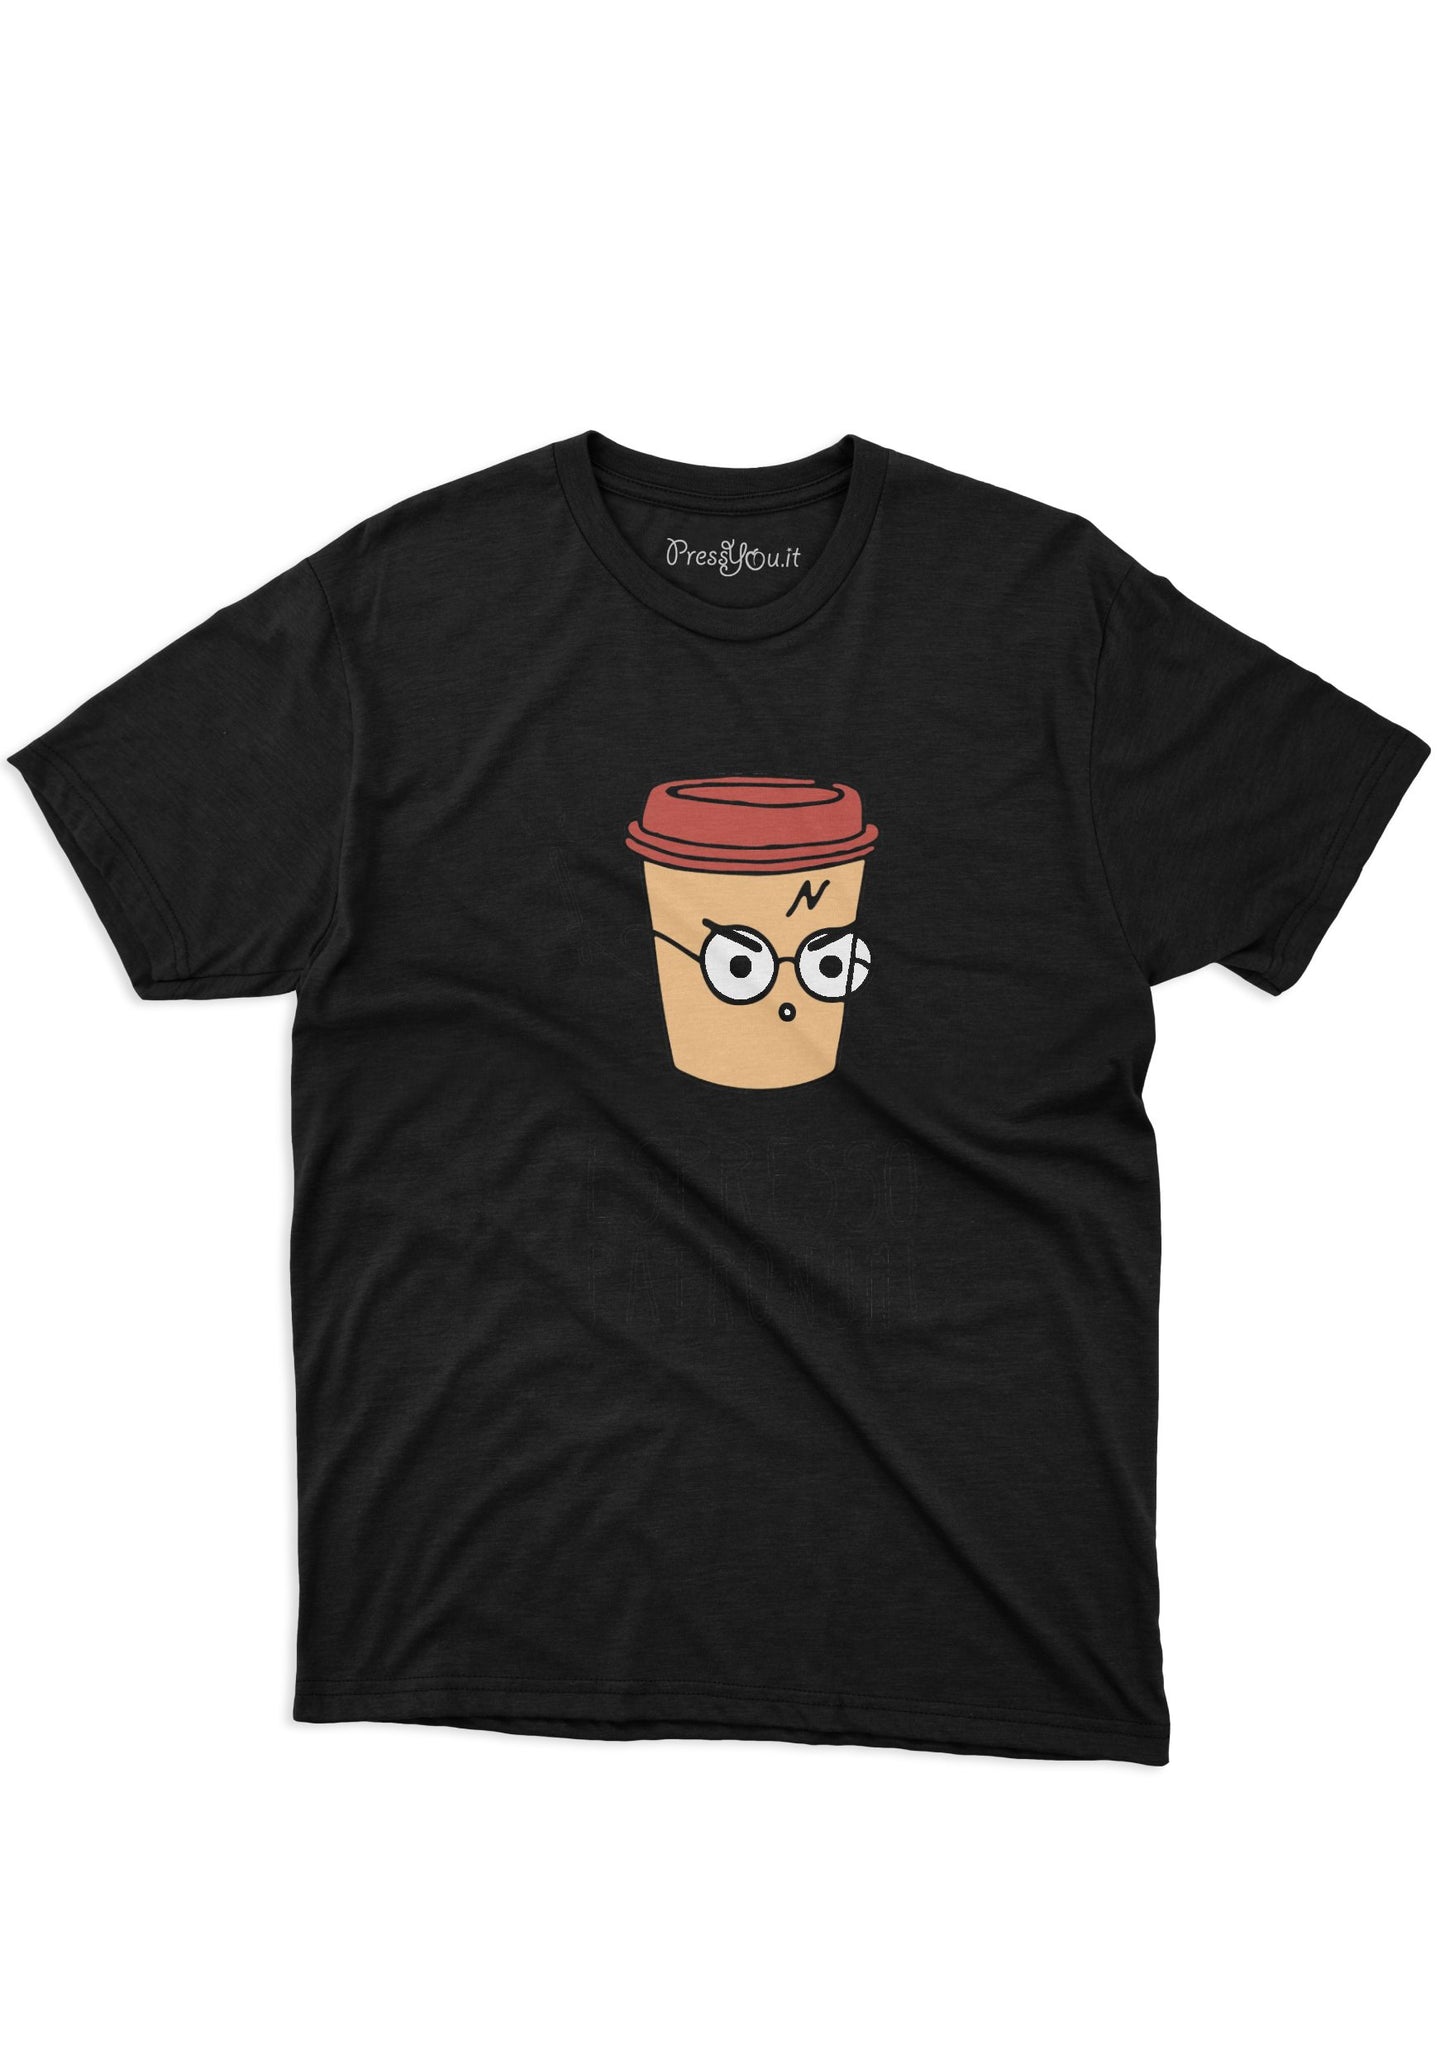 harry espresso patronum t-shirt